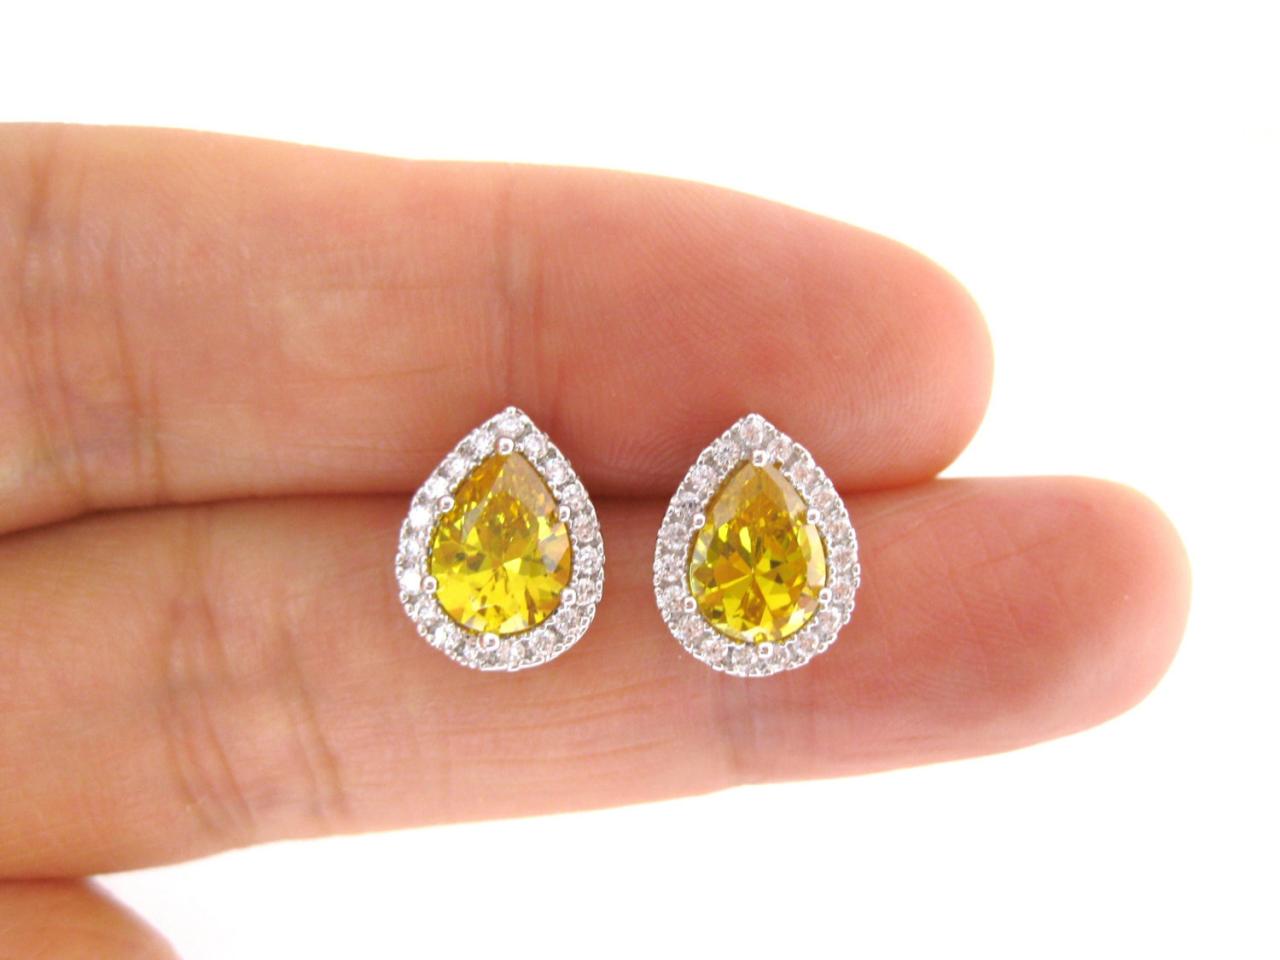 Sunflower Yellow Cubic Zirconia Earrings Teardrop Stud Earrings Bridal Earrings Wedding Jewelry Bridesmaids Gift Yellow Stud Earrings (e155)